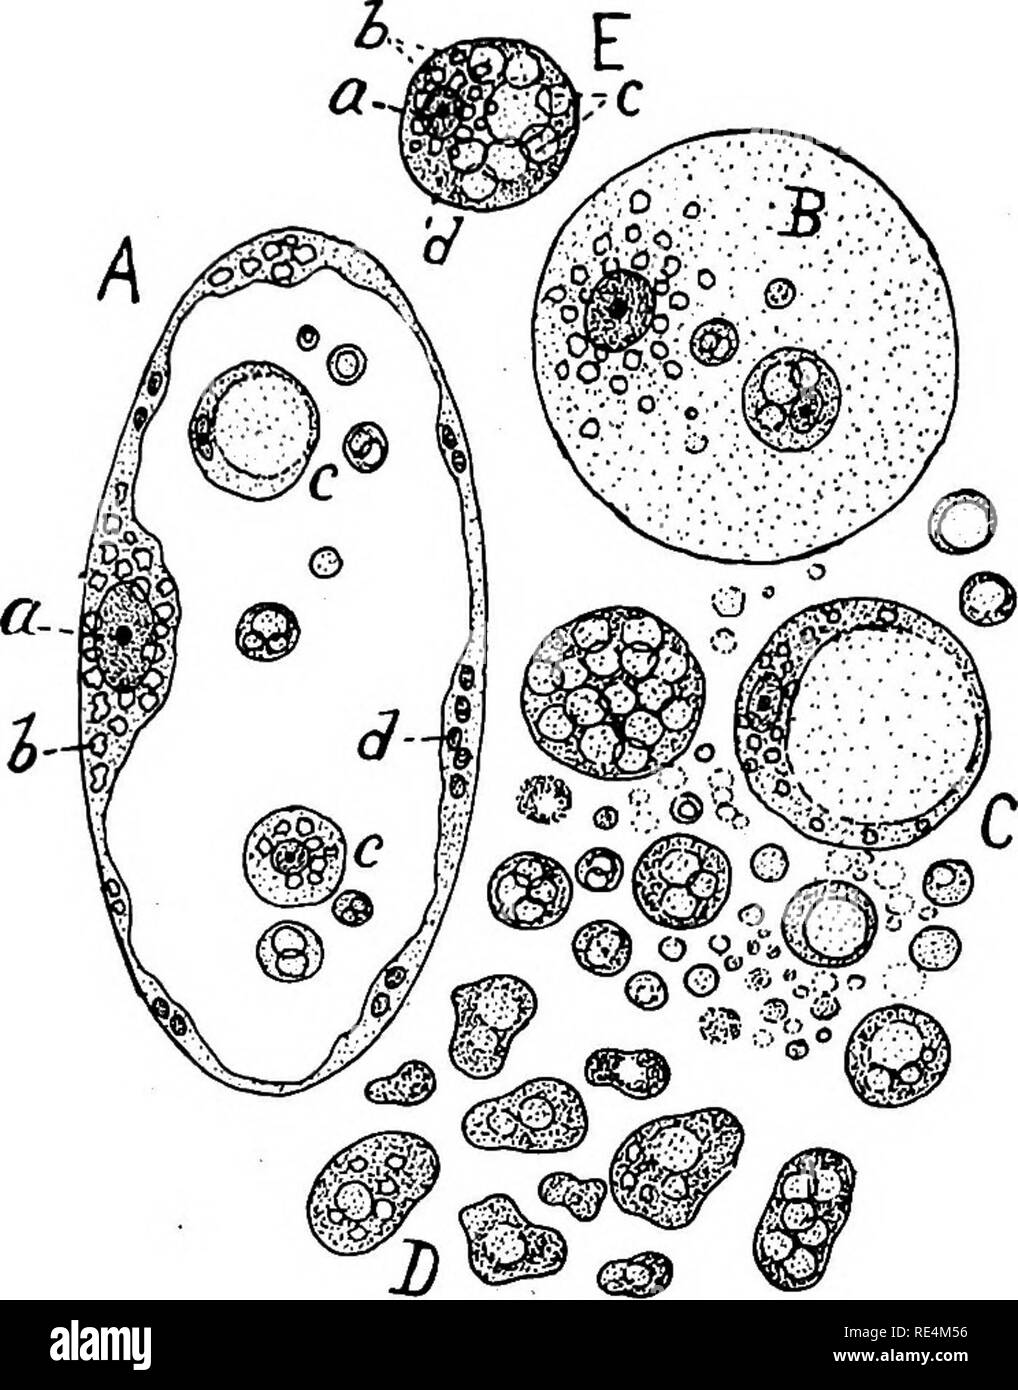 . Bactériologie pharmaceutique. Bactériologie, désinfection et de désinfectants. SYMBIOLOGY-LES LIENS BIOLOGIQUES DES ORGANISMES 131 de diamètre. La forme normale de l'sphaerocytes, comme le nom l'indique, est celle d'une sphère parfaite, même si certaines sont plus ou moins irrégulier en contours et certains montrent un mouvement ameboid. Sphaerocytes motiles activement sont relativement nombreux dans la tomate verte et aussi dans le raisin vert. Le plus petit et probablement le moins spharocytes des fruits jusqu'à présent examinées ont en commun les caractéristiques suivantes : I. Ils sont sphériques dans formulaire sauf Banque D'Images